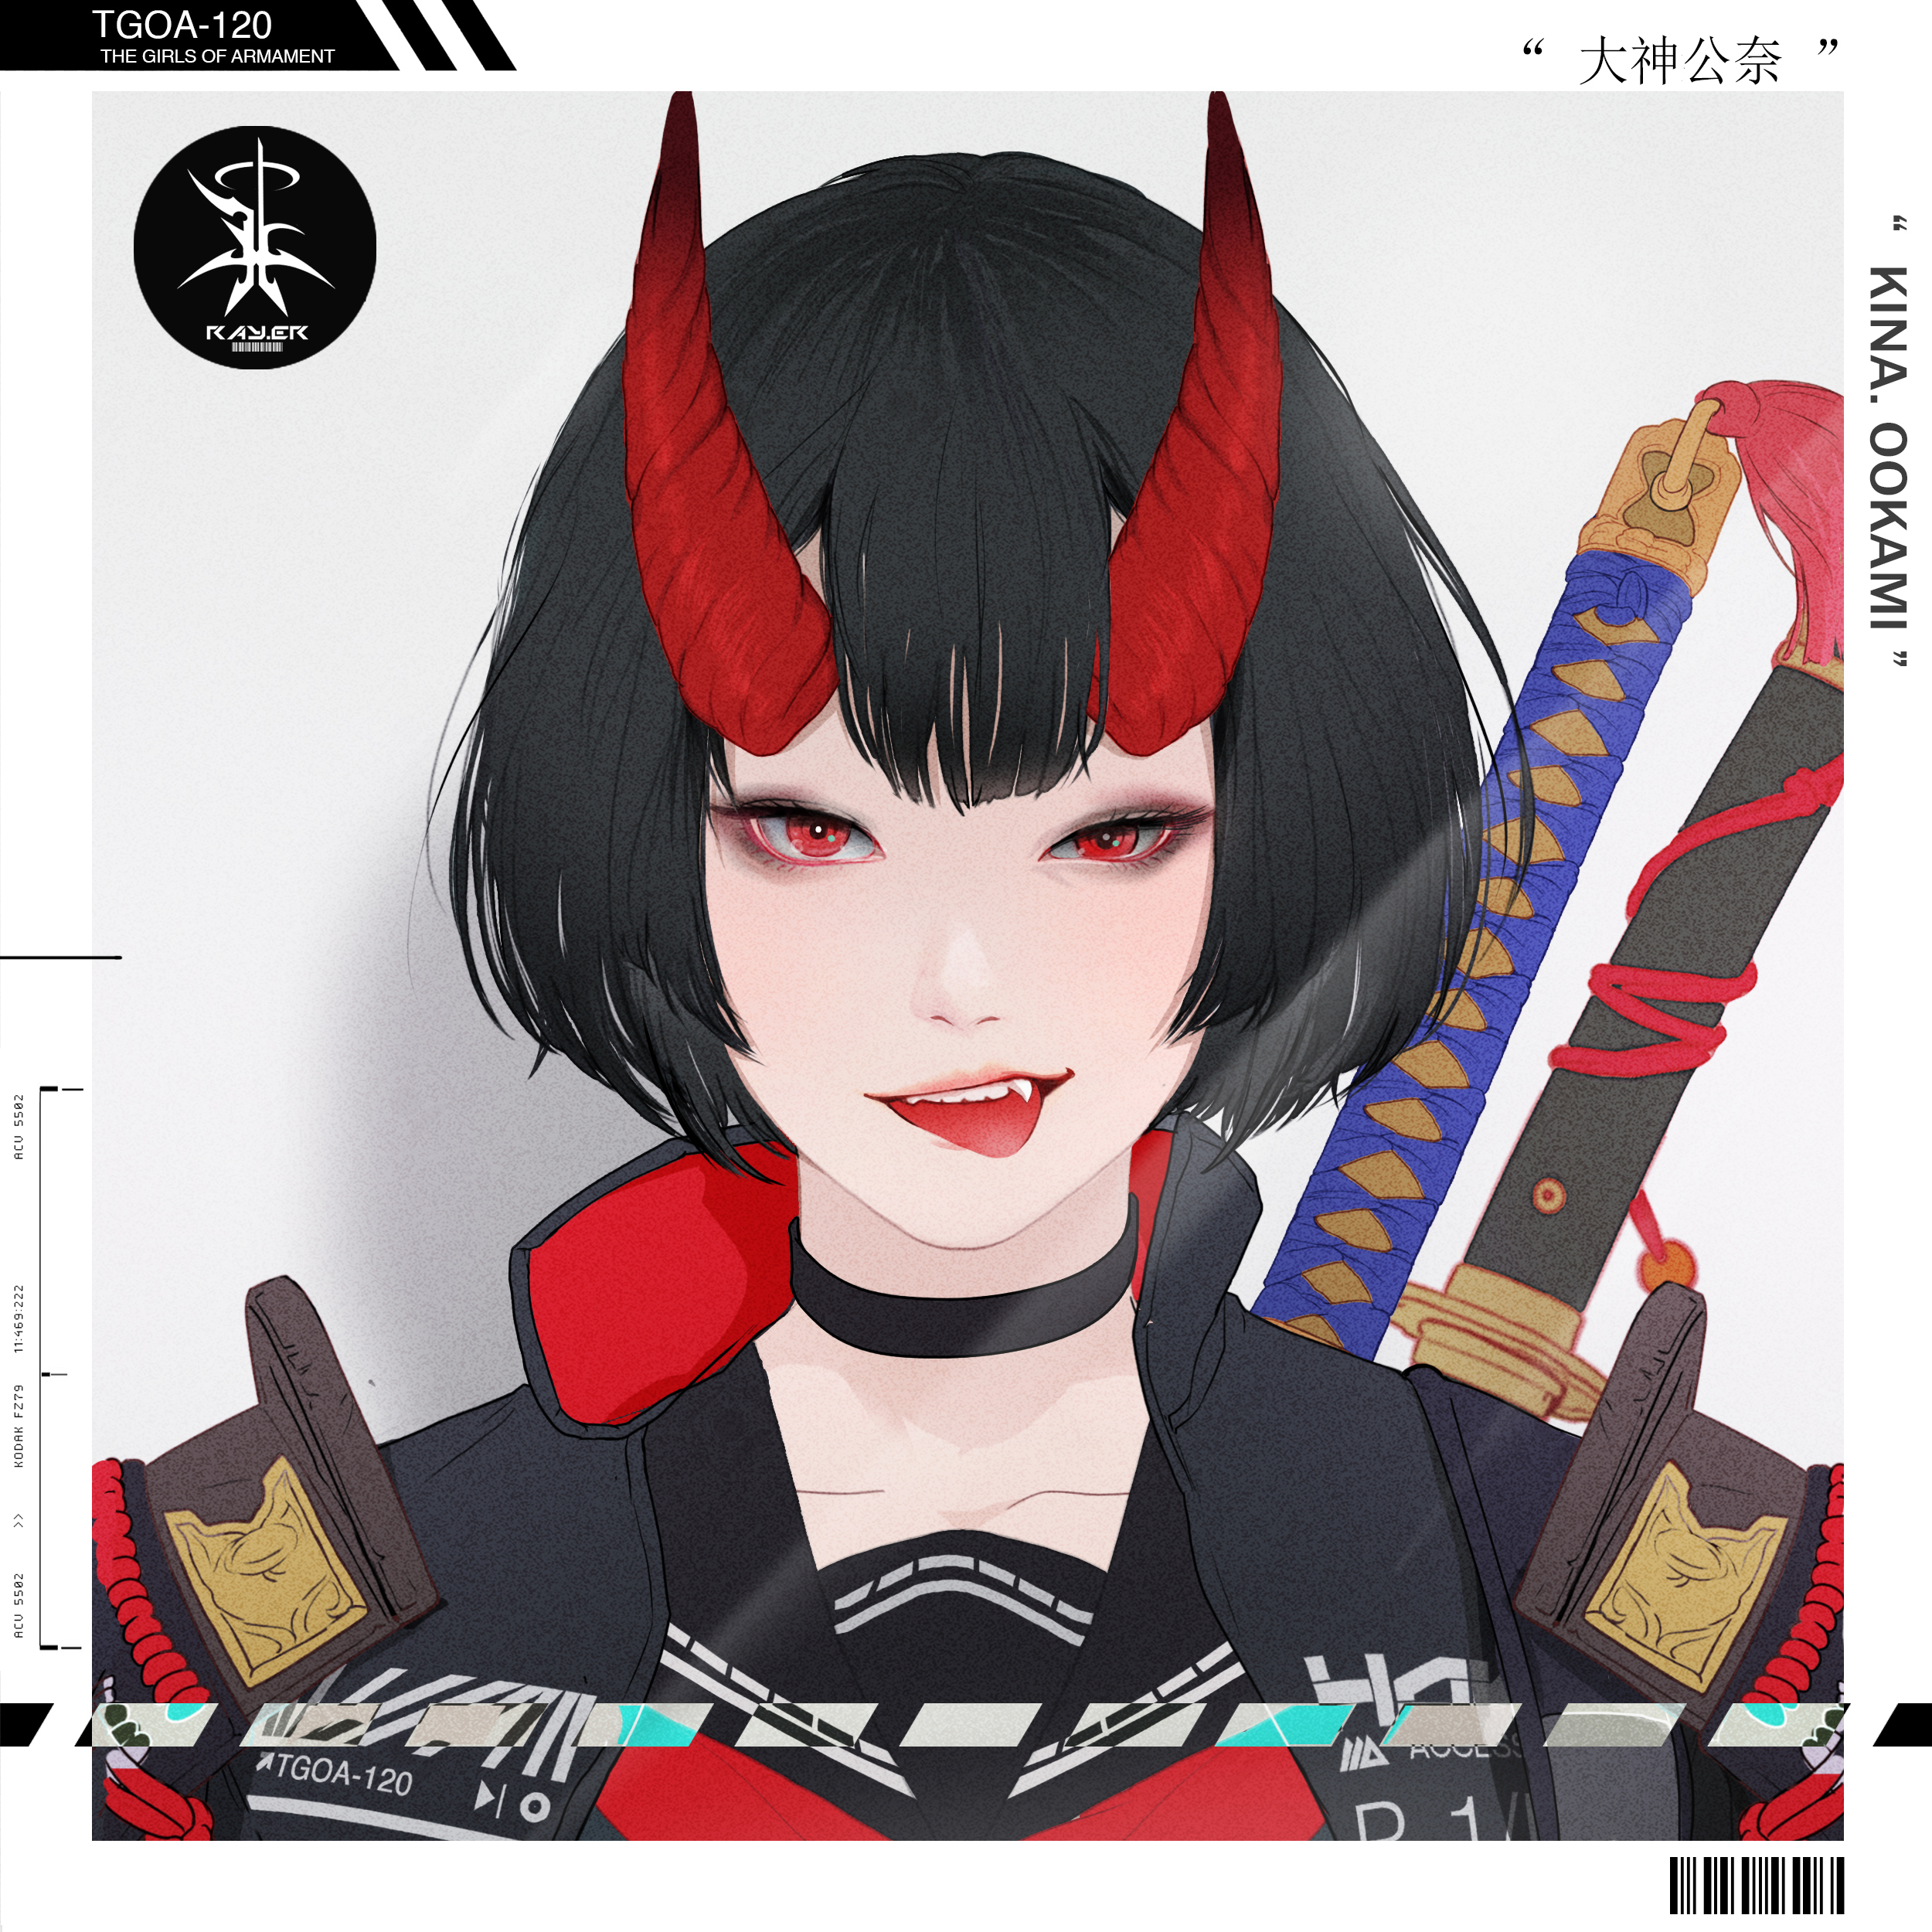 Gharliera Anime Girls Anime Horns Demon Horns Red Eyes Sword 2500x2500